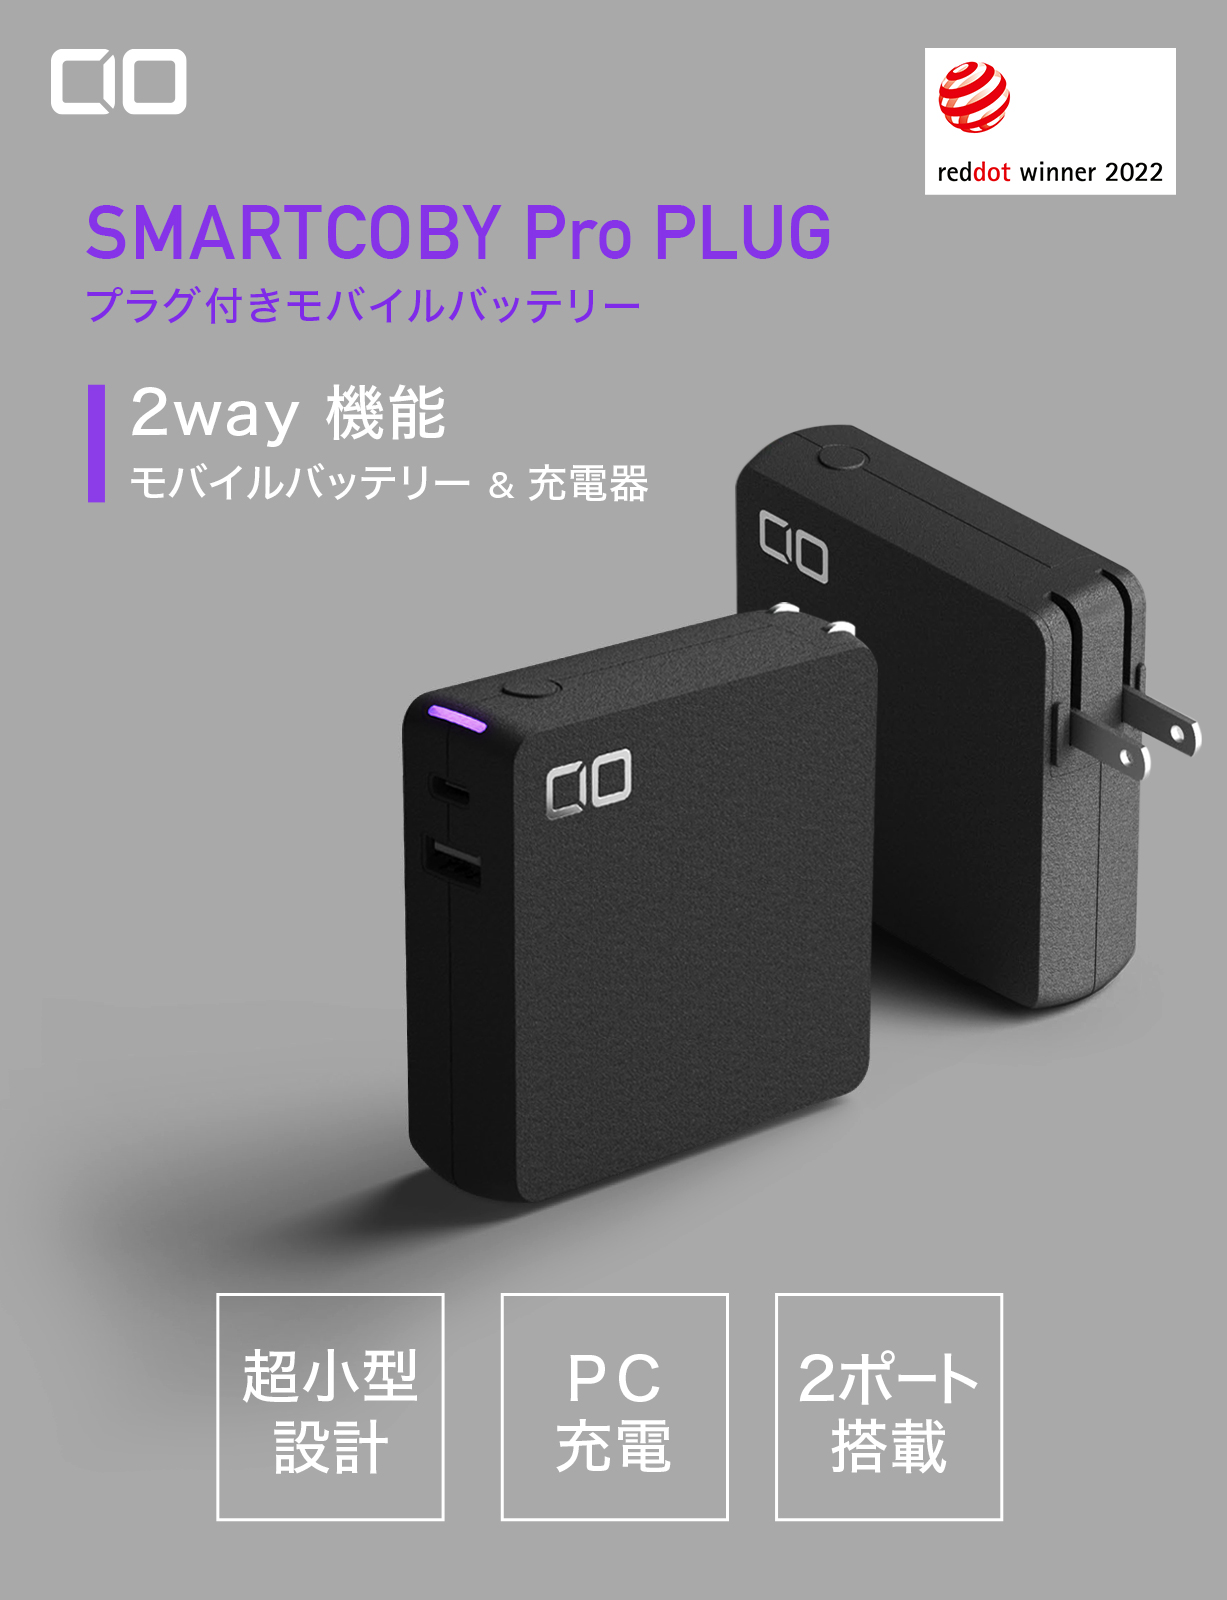 SMARTCOBY Pro PLUG | 株式会社CIO（シーアイオー）公式HP 充電器・モバイルバッテリーメーカー